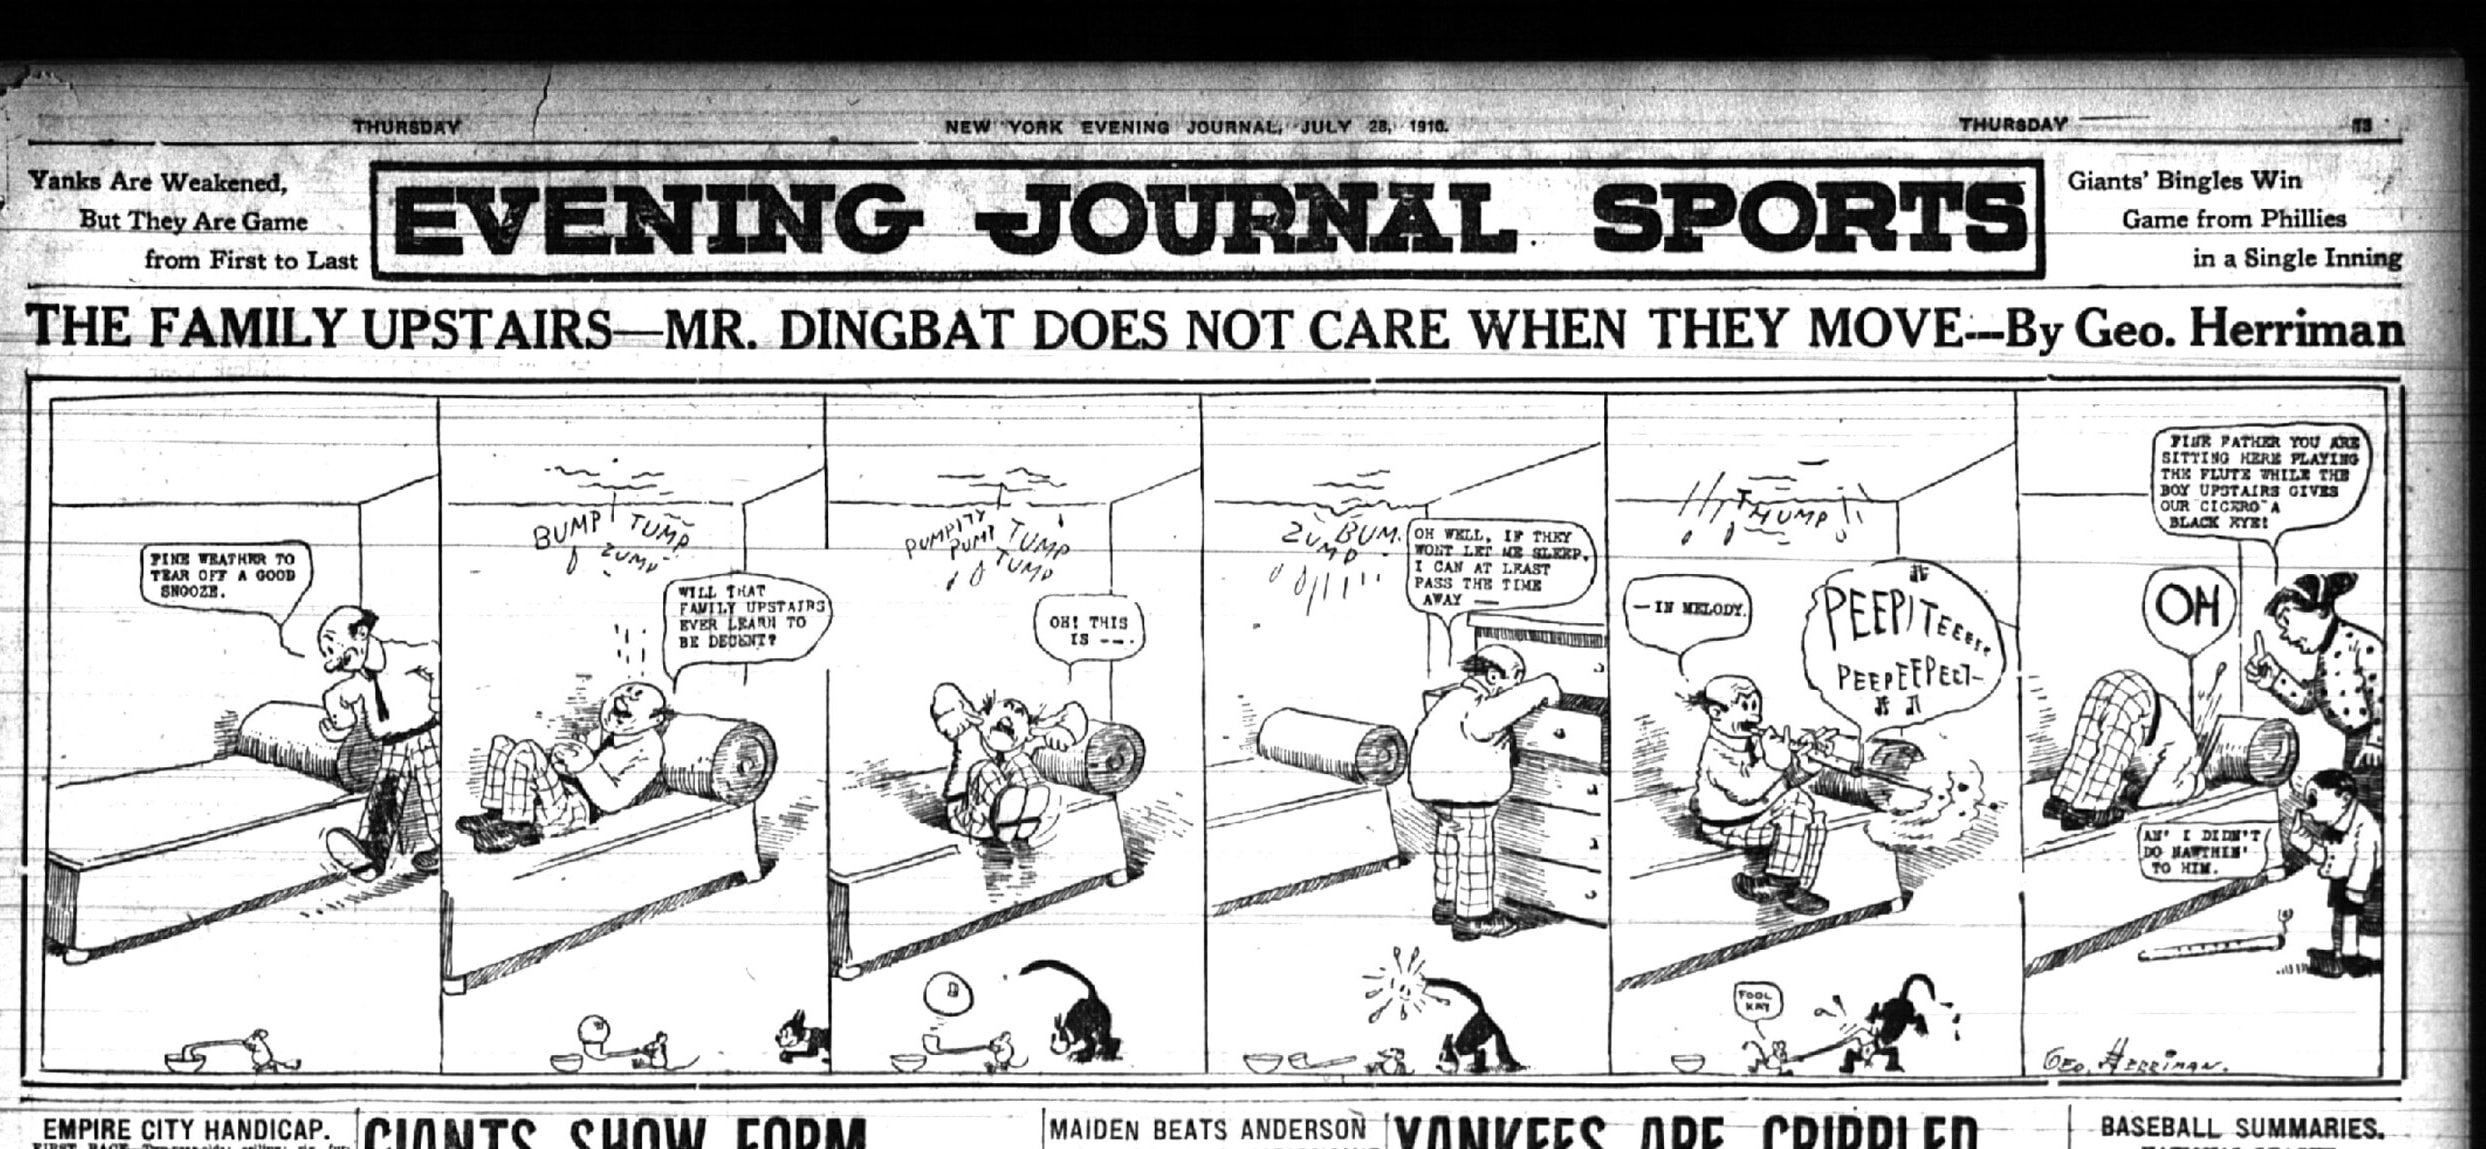 New-York-Evening-Journal-July-28-1910-opt.jpg